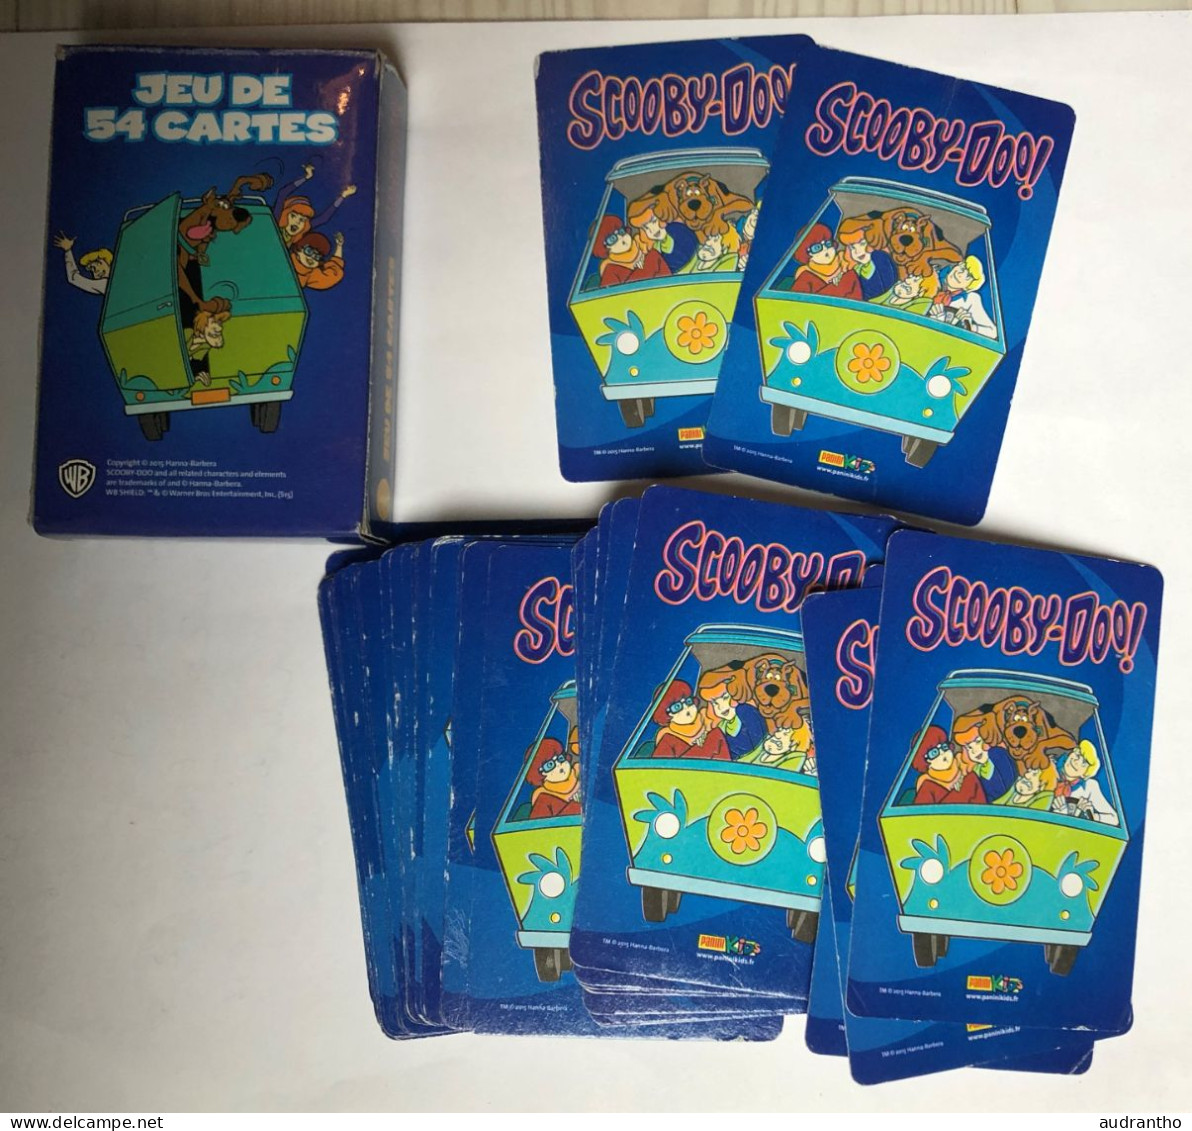 Jeu De 54 Cartes SCOOBY-DOO - Playing Cards 2015 Hanna Barbera - 54 Cards